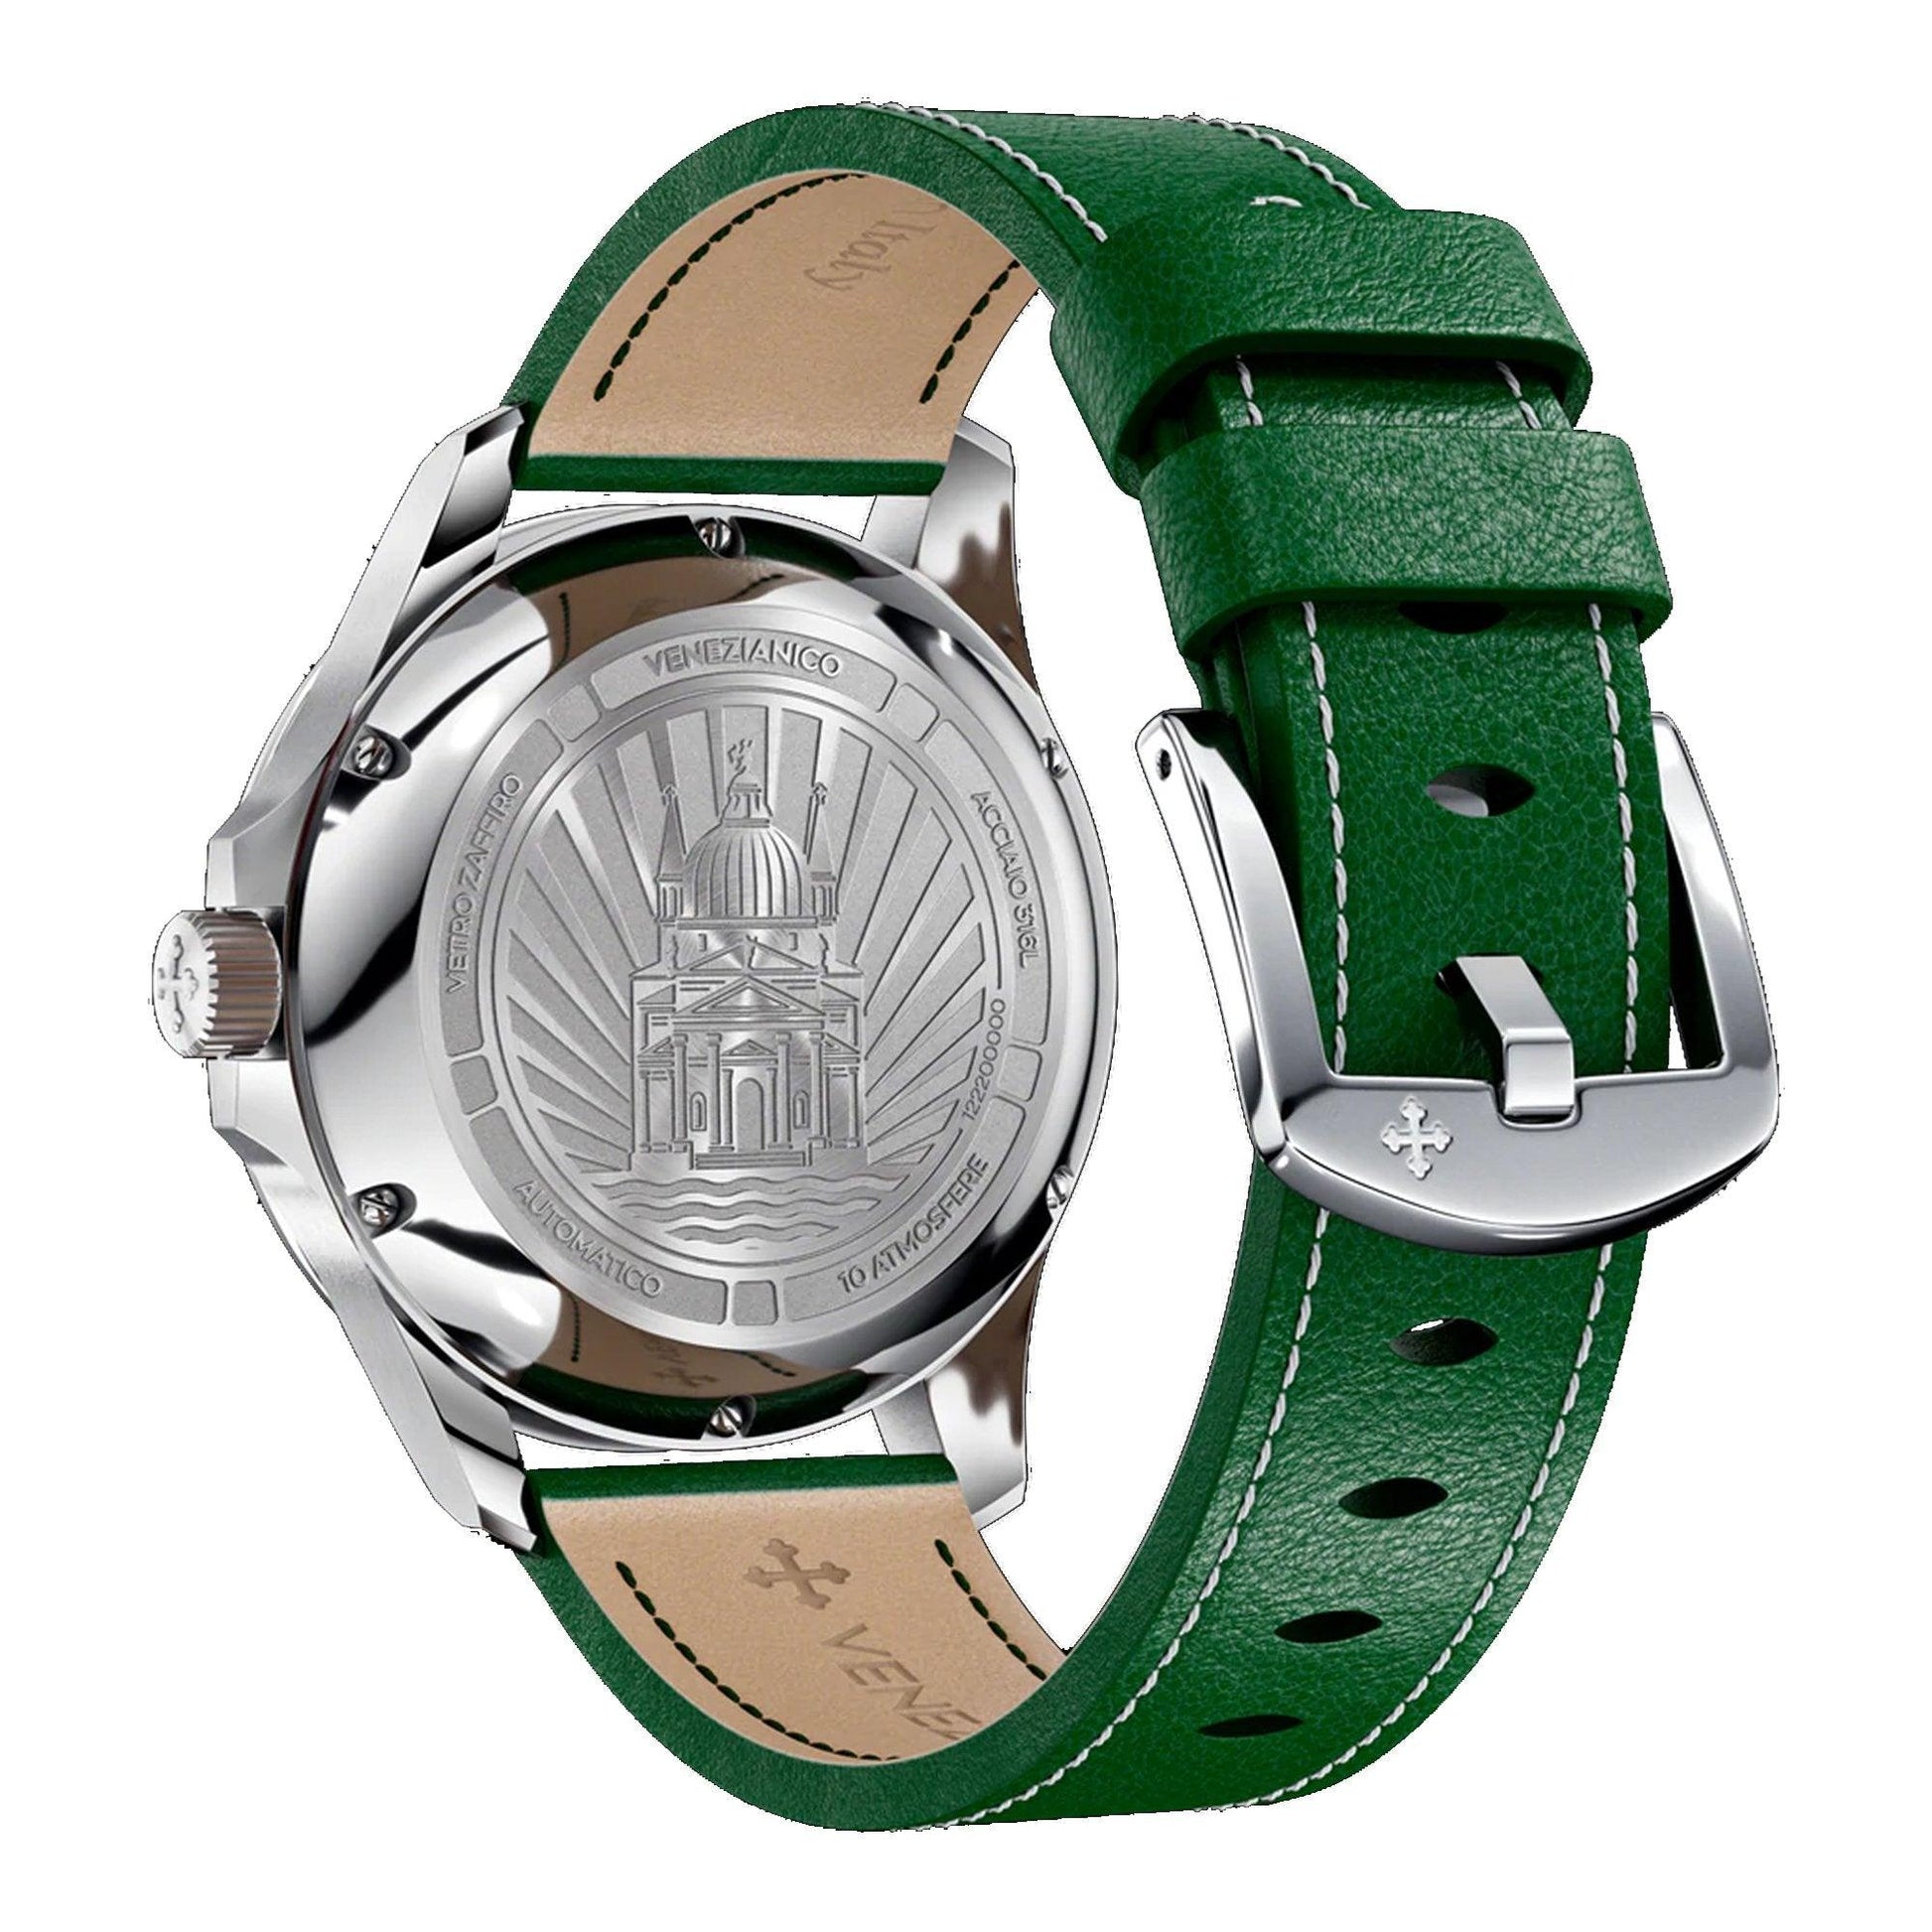 Venezianico Redentore 40 1221501 orologio uomo meccanico - Kechiq Concept Boutique